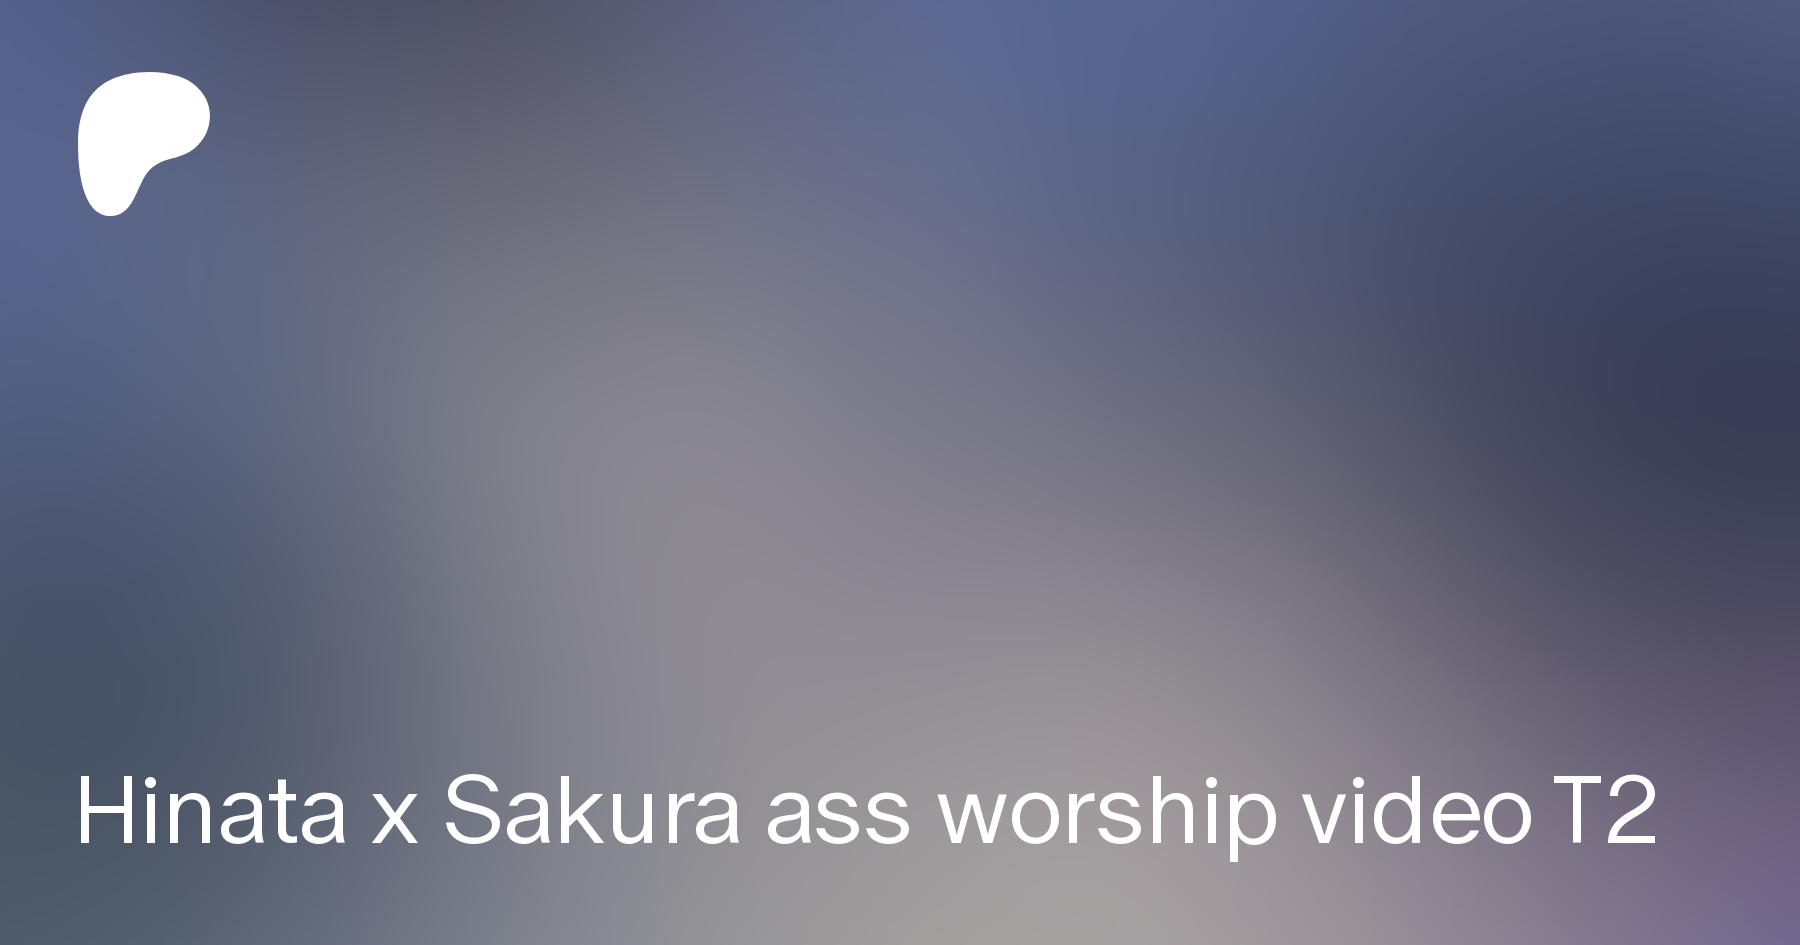 Ass worship videos